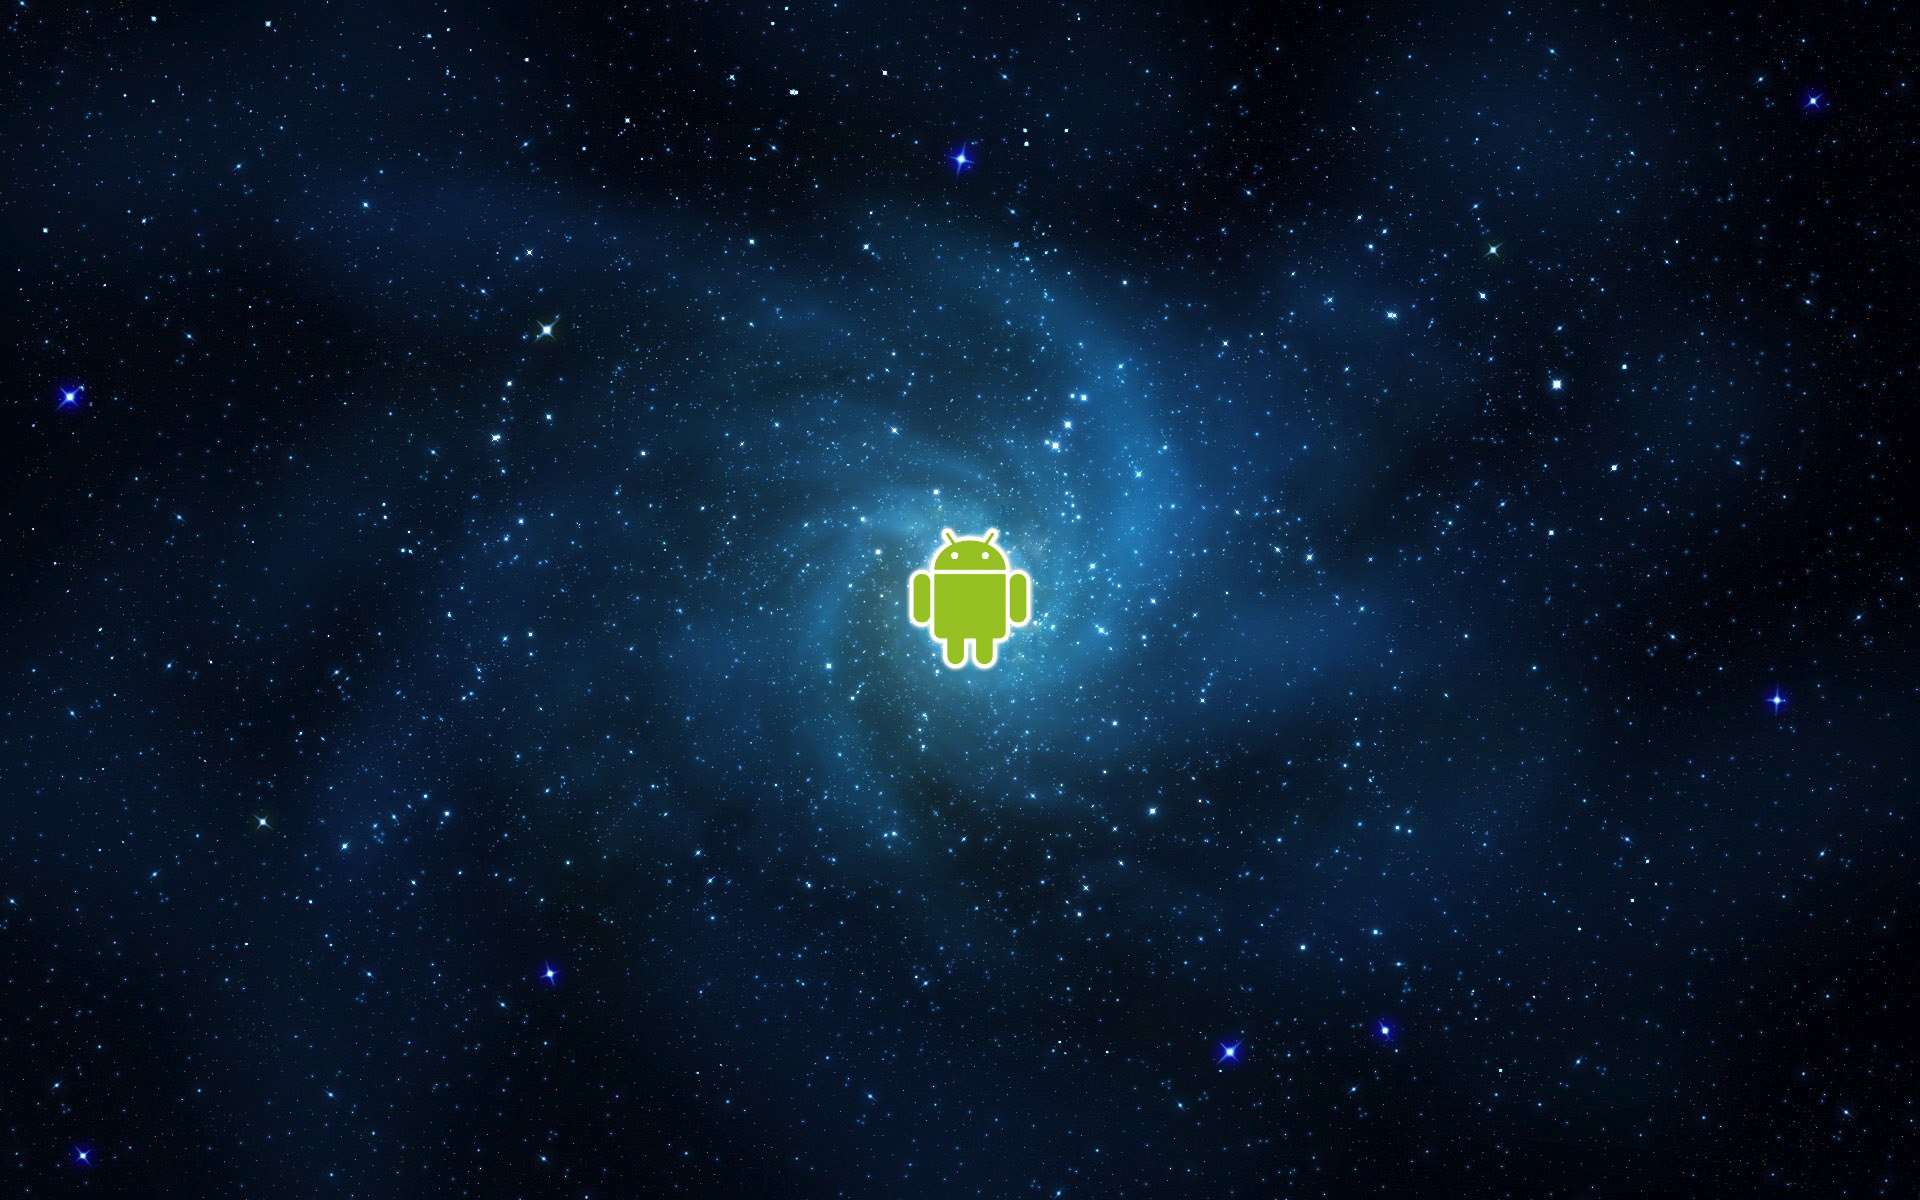 космическое пространство, звезды, Android - обои на рабочий стол